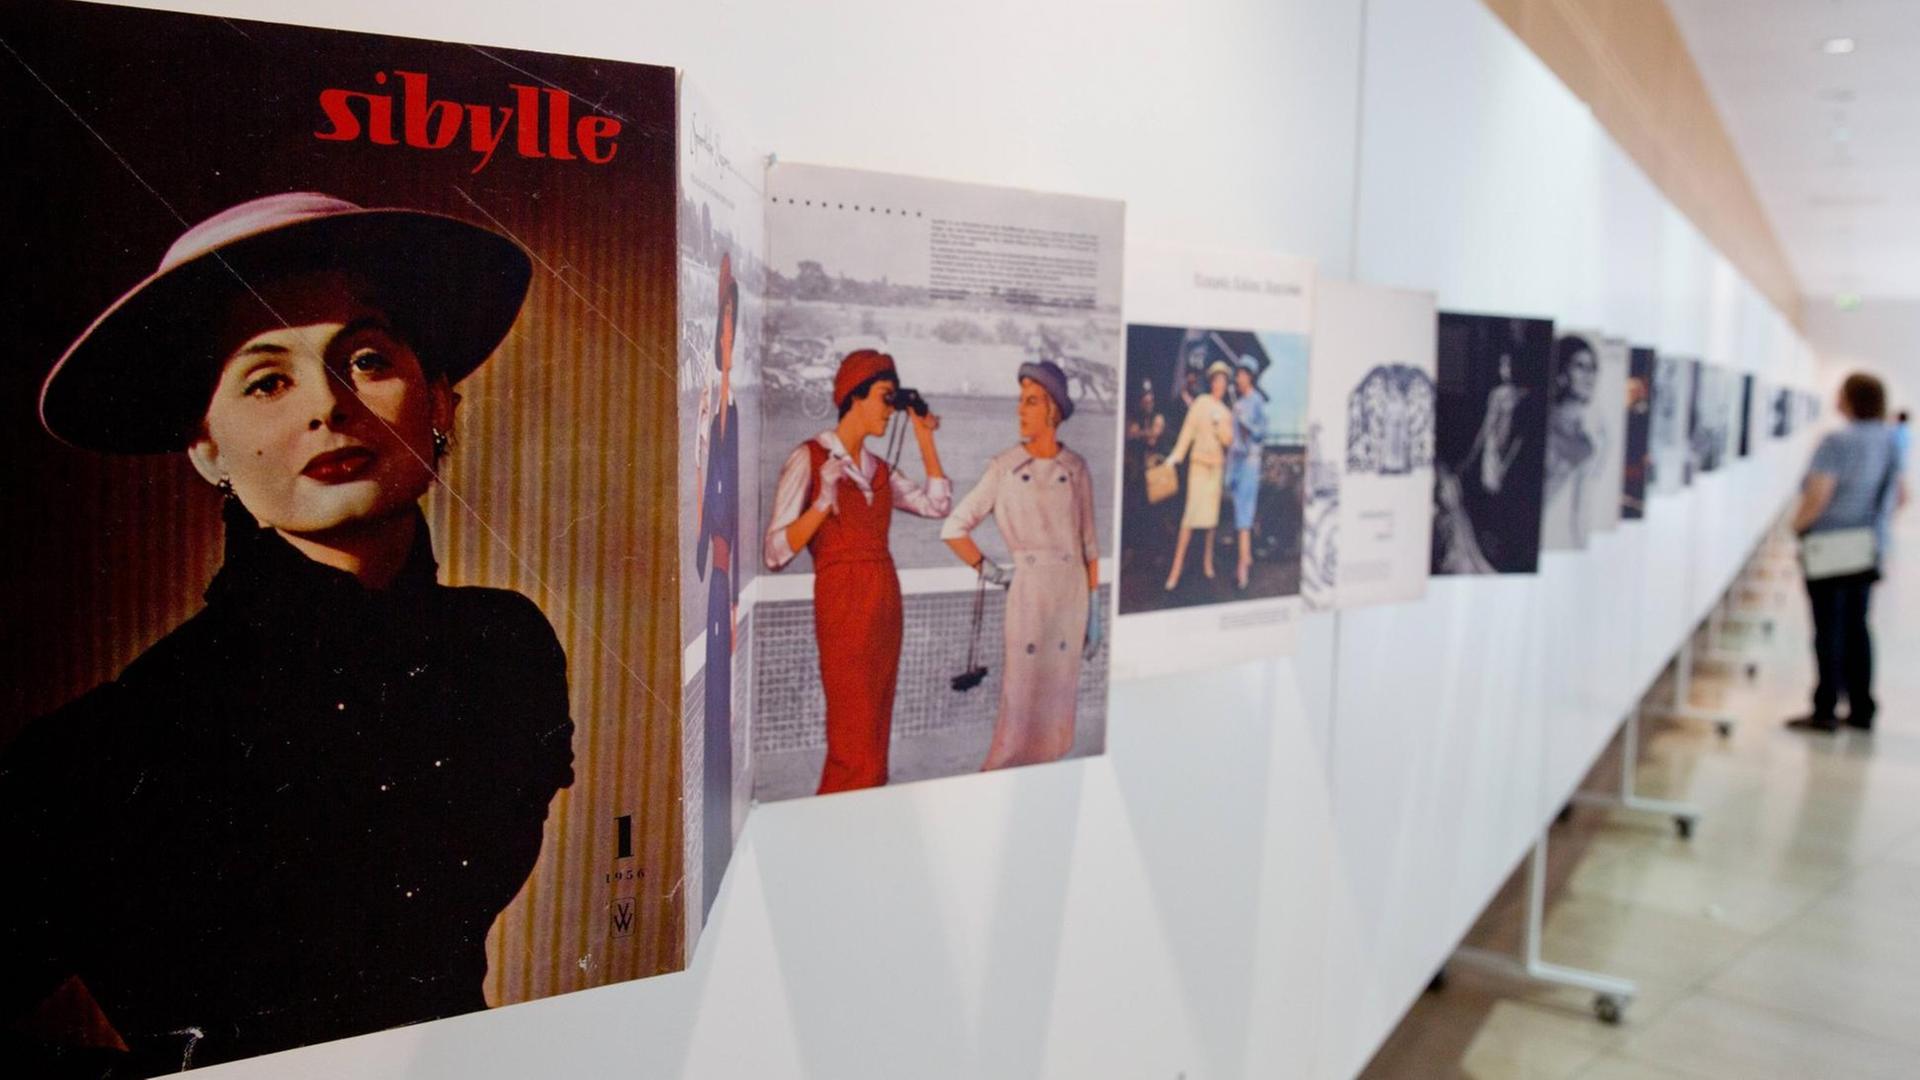 Eine Ausstellung zur DDR-Zeitschrift "Sibylle" im Willy Brandt Haus in Berlin im Juni 2019. Vergrößerte Auszüge von Exemplaren der Zeitschrift, hier mit dem Schwerpunkt Damenmode, werden von Besuchern betrachtet.